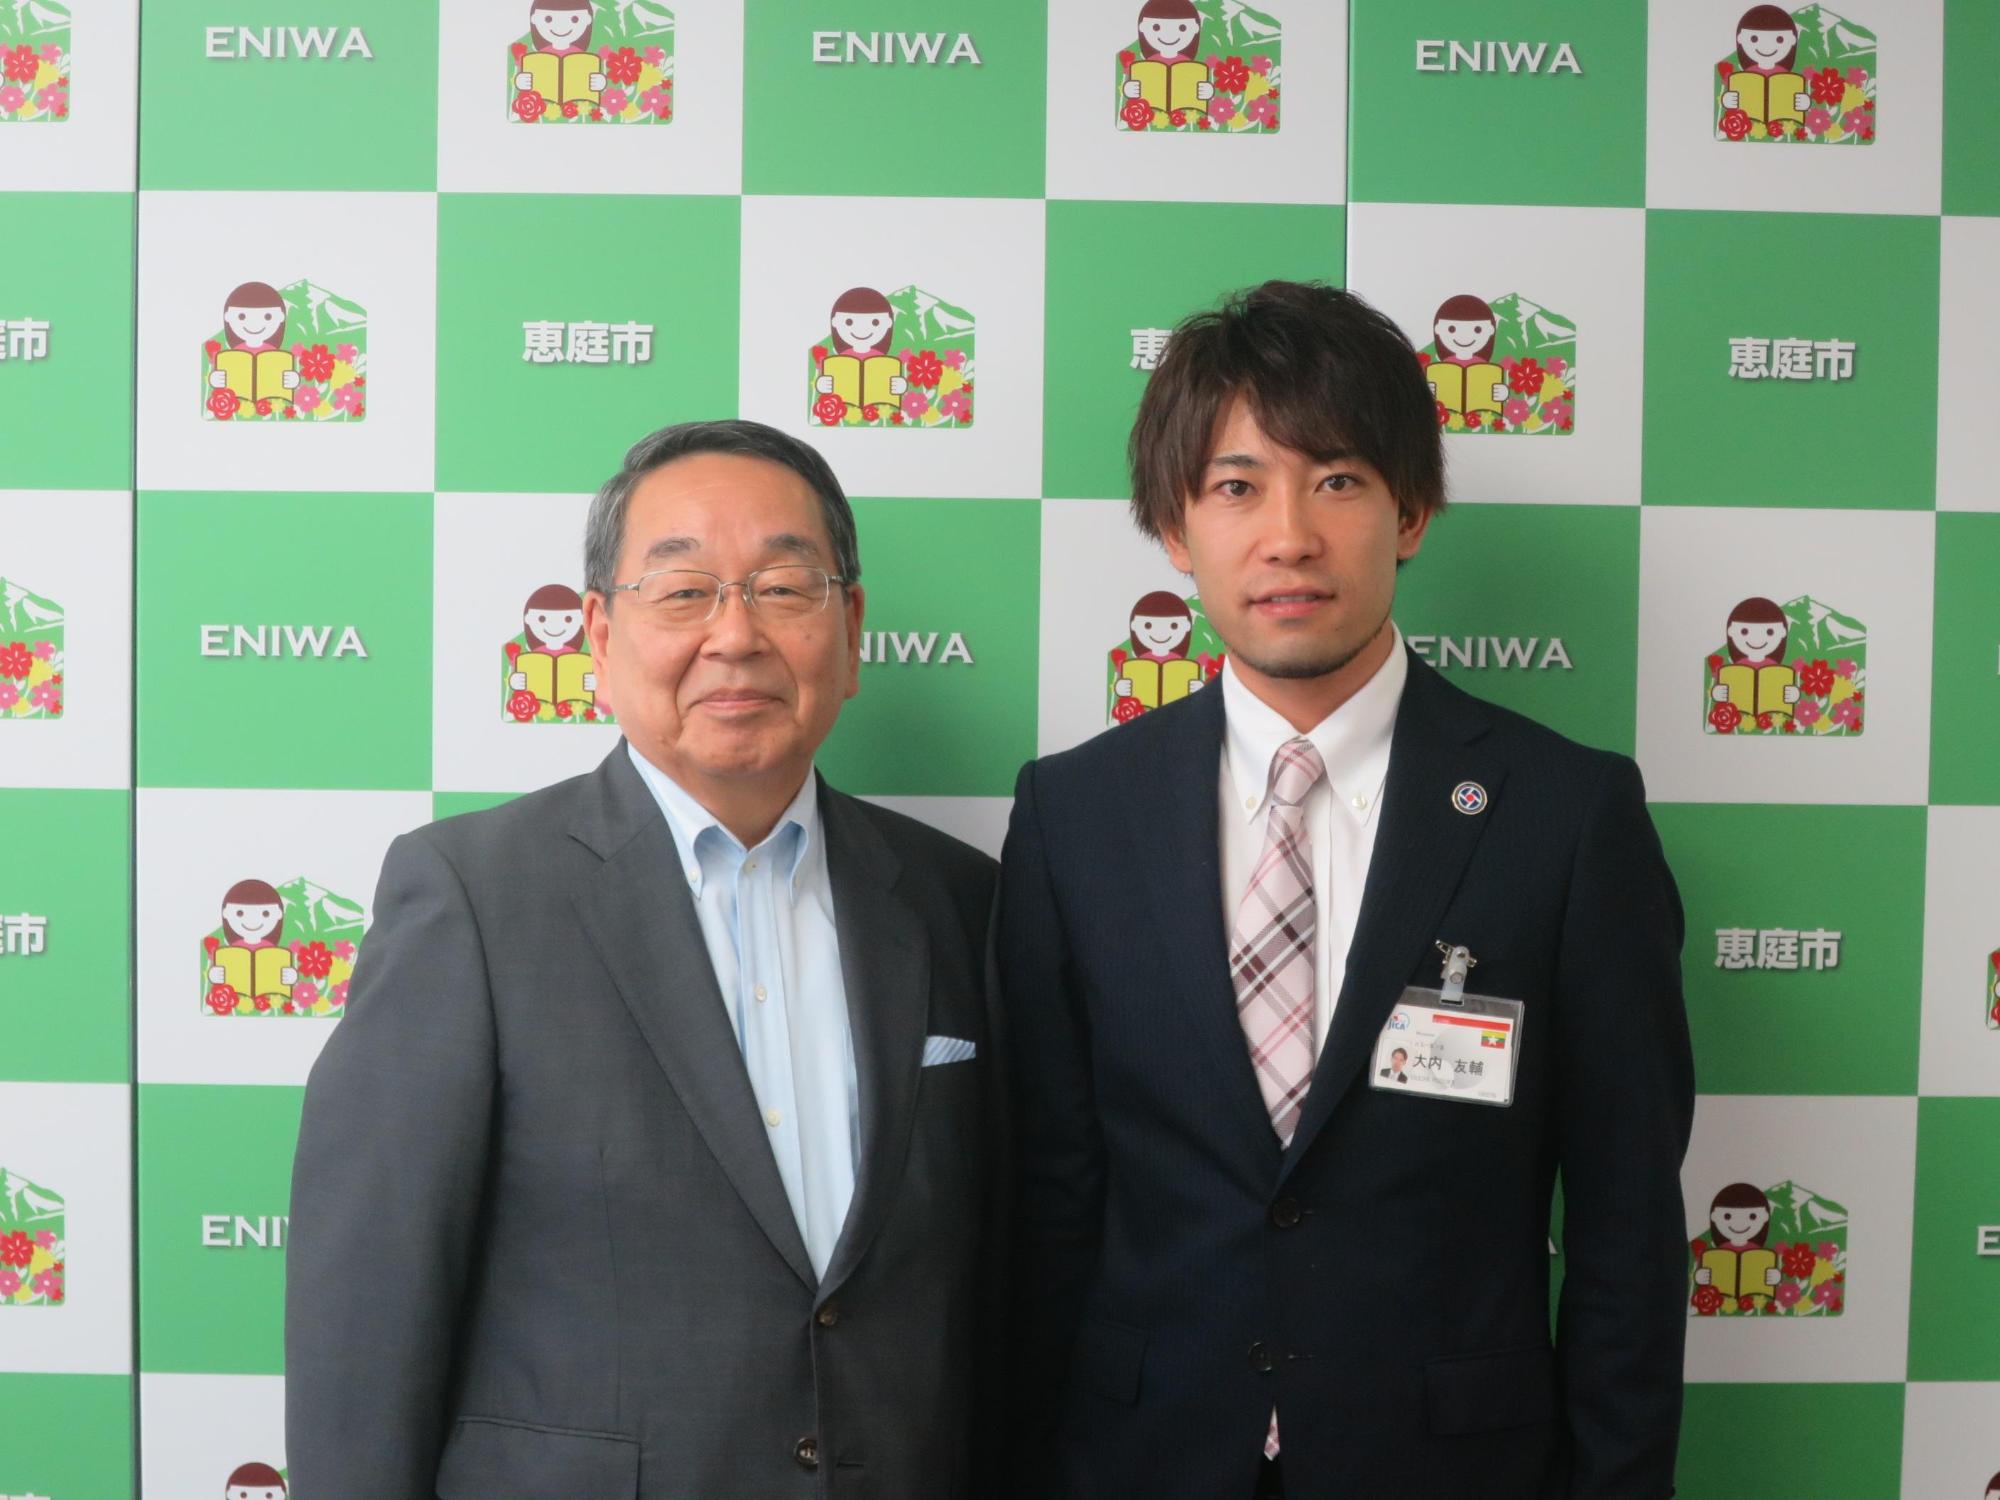 青年海外協力隊員の大内さんと原田市長が記念撮影している写真